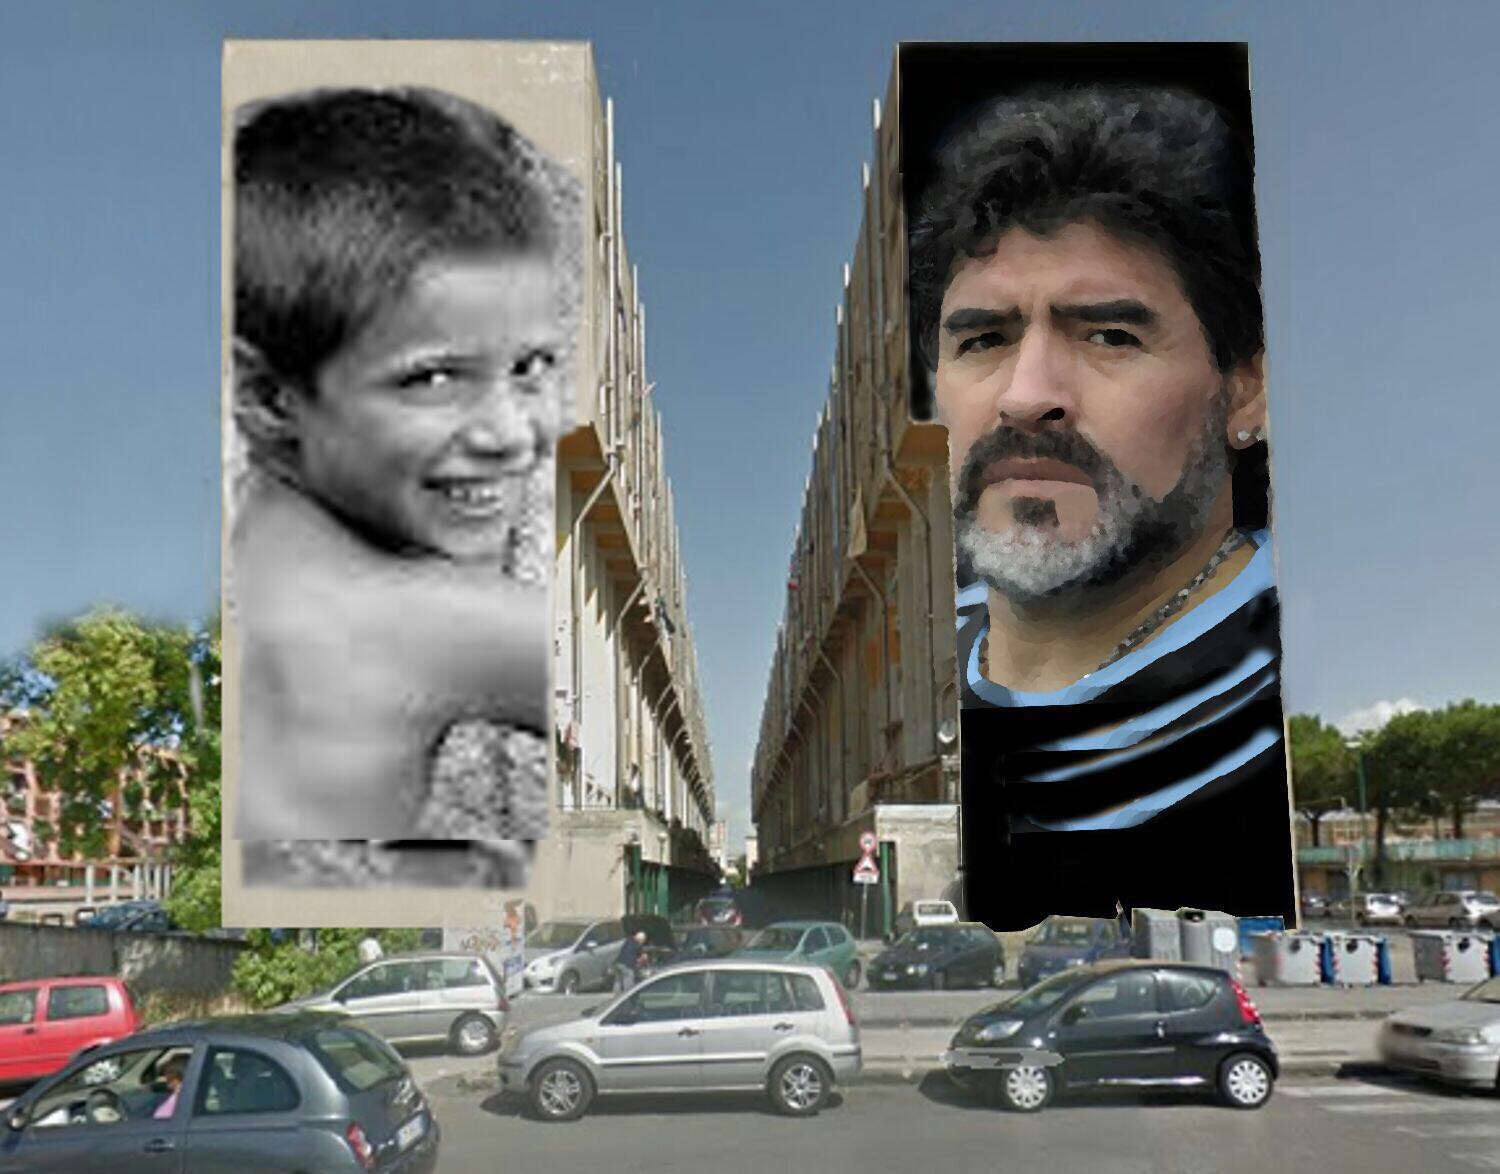  San Giovanni a Teduccio, in via Taverna del ferro il murales di Jorit per Diego Armando Maradona